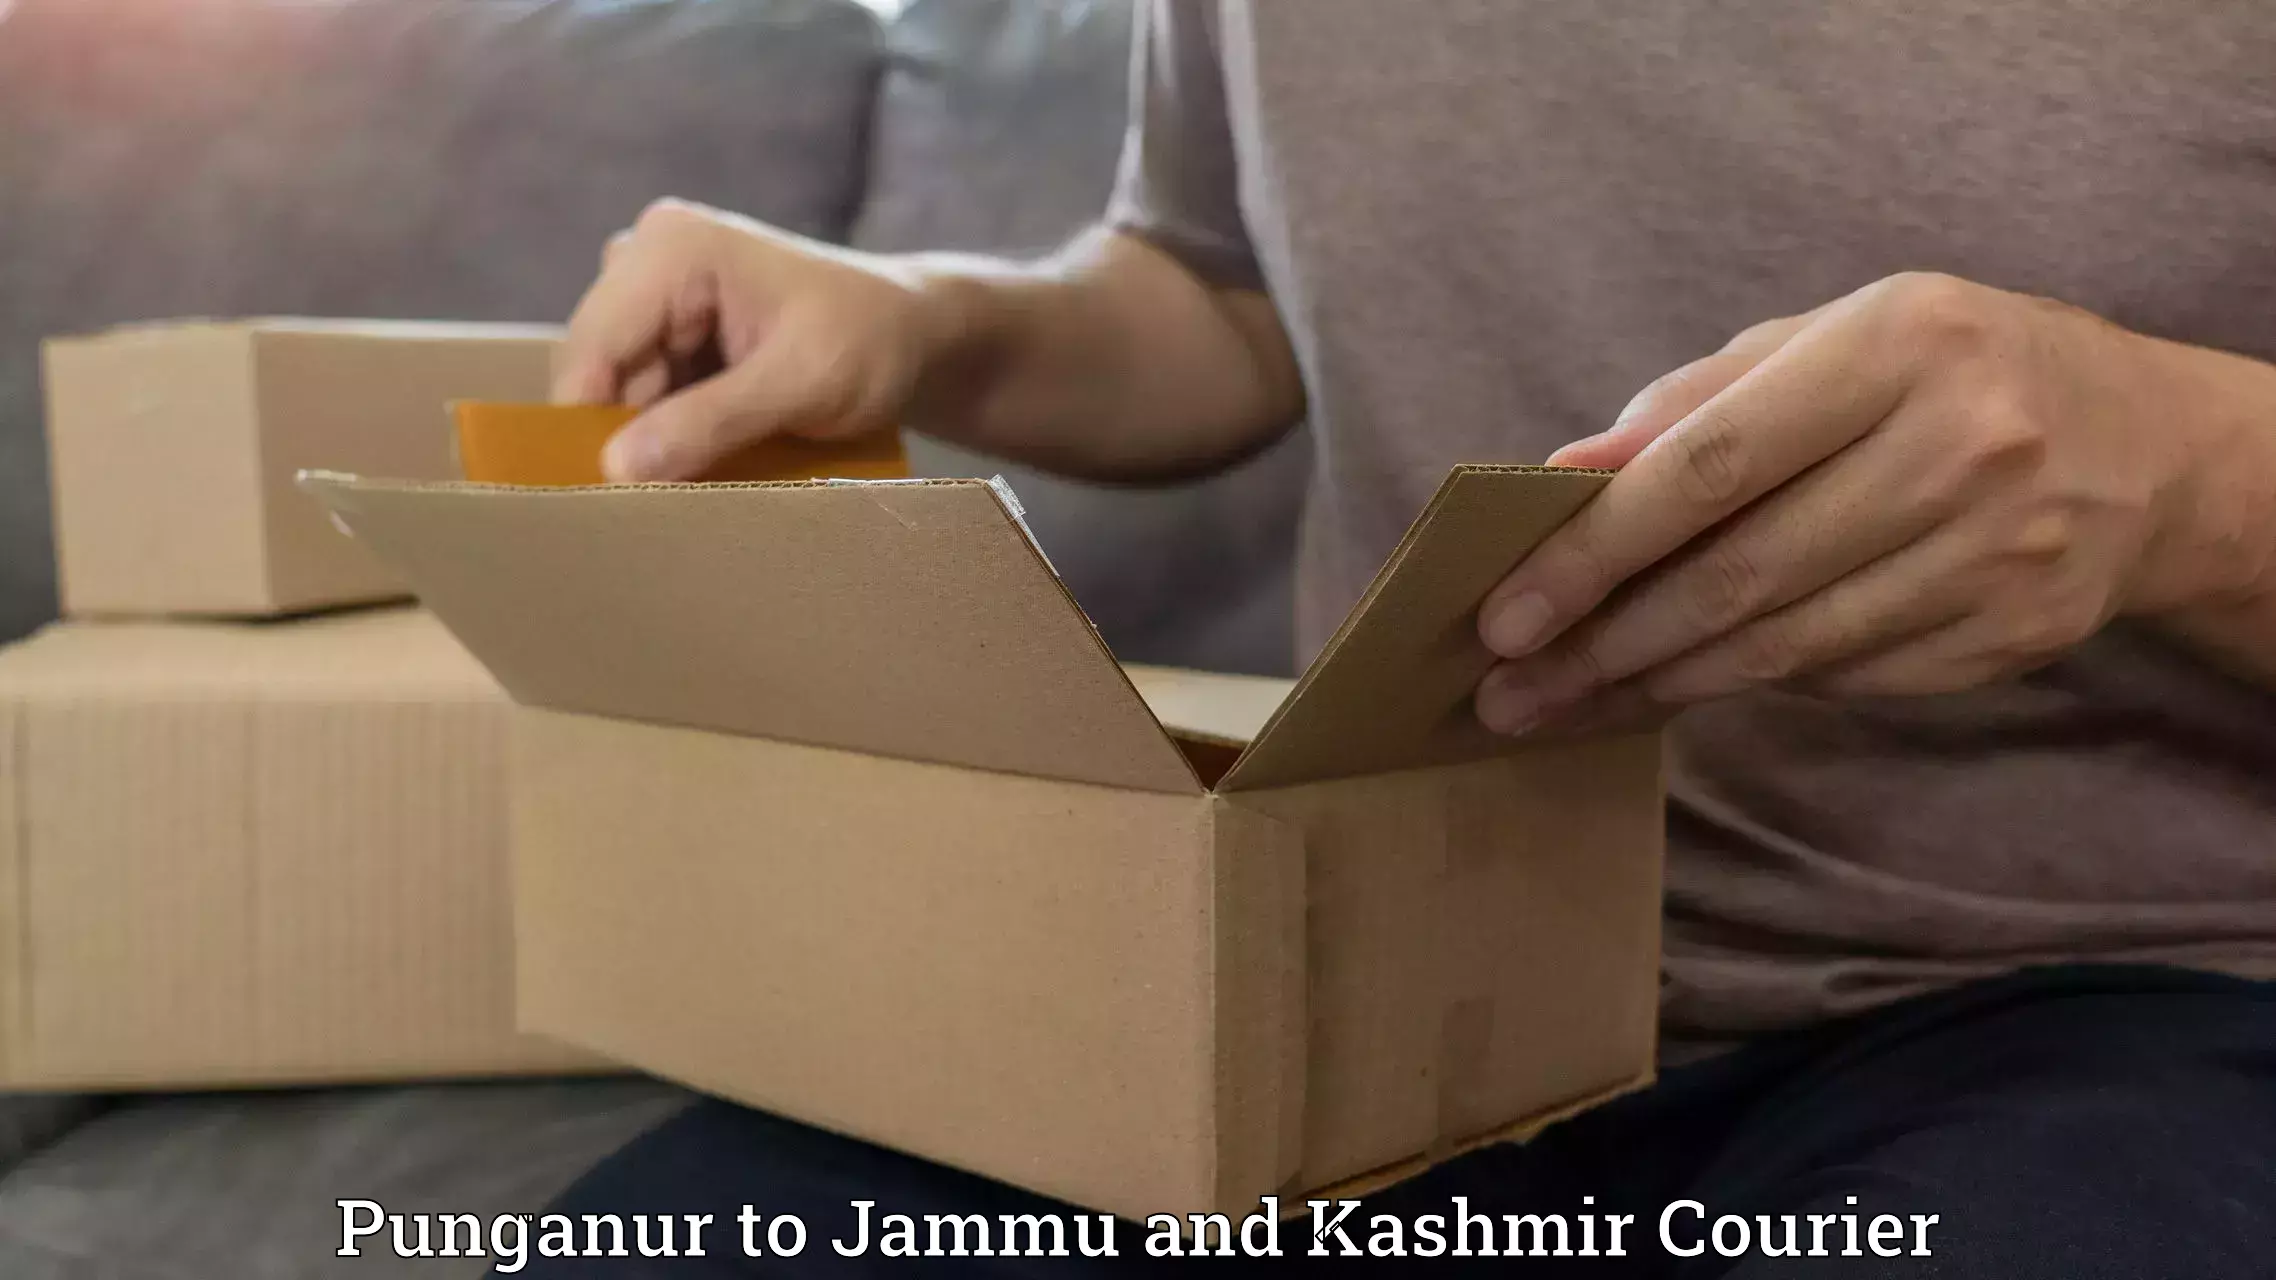 Tracking updates Punganur to Jammu and Kashmir